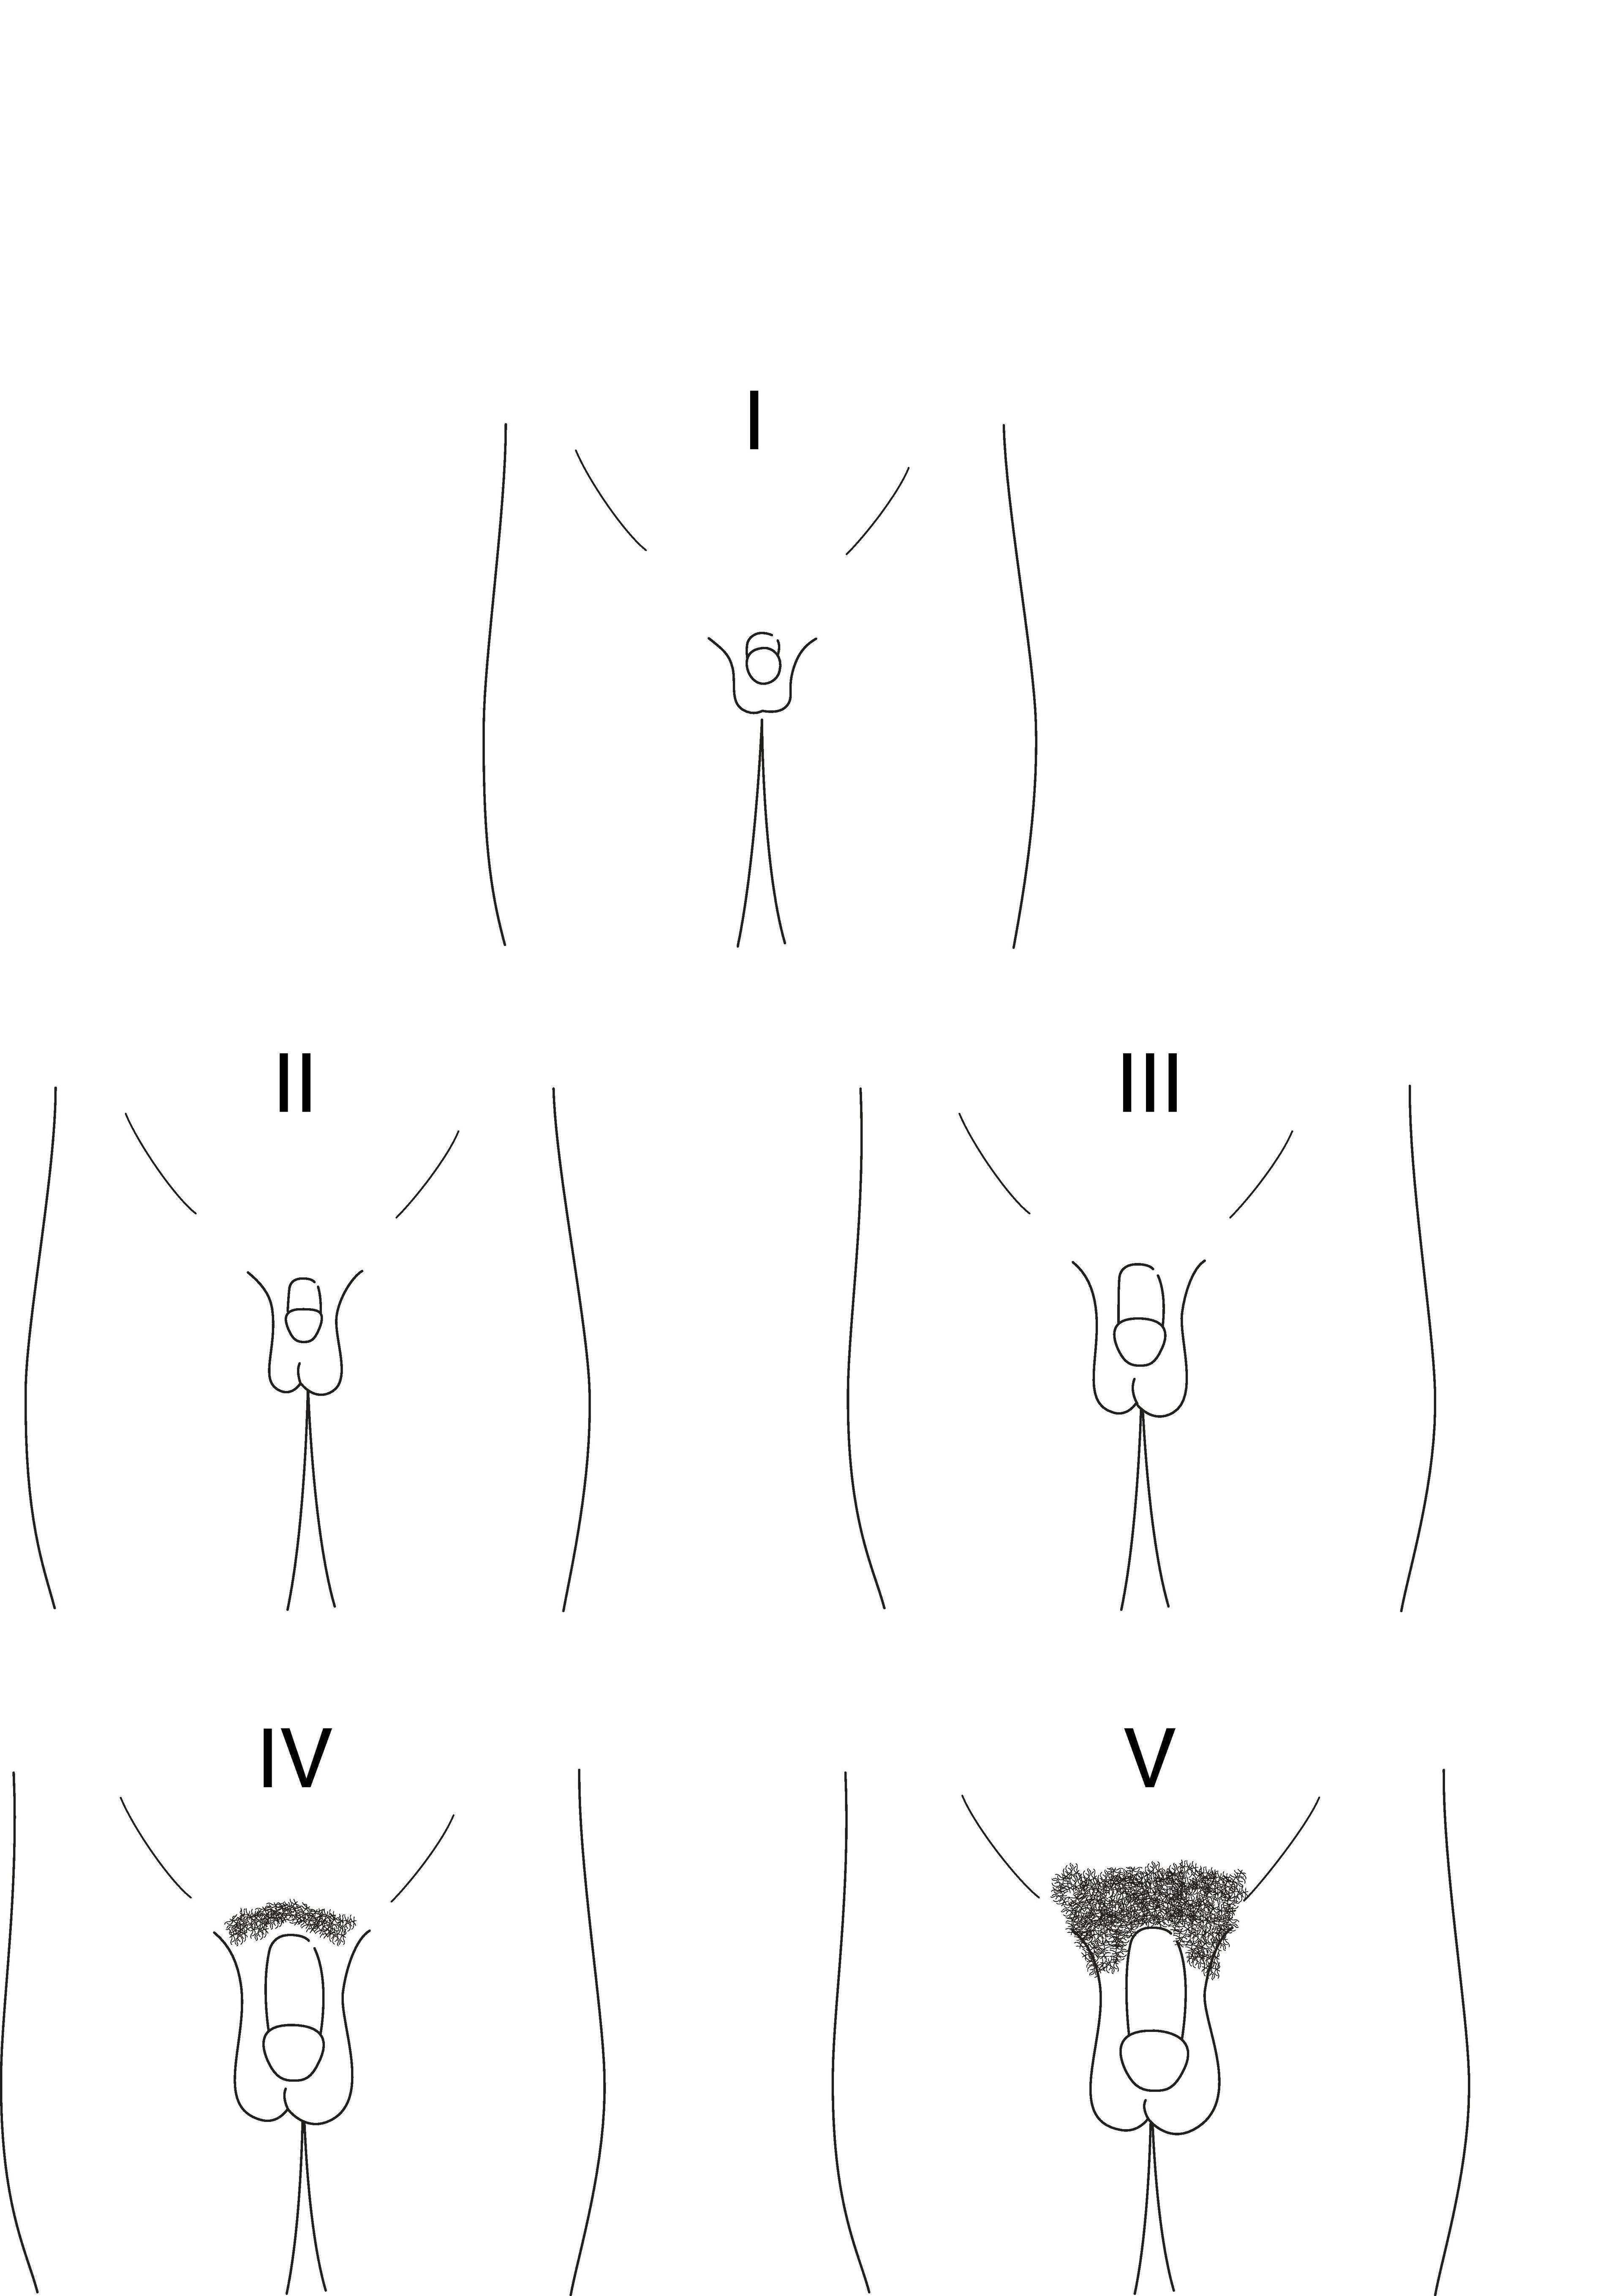 Representação diagramática dos estágios I a V de Tanner para o desenvolvimento do pênis em meninos